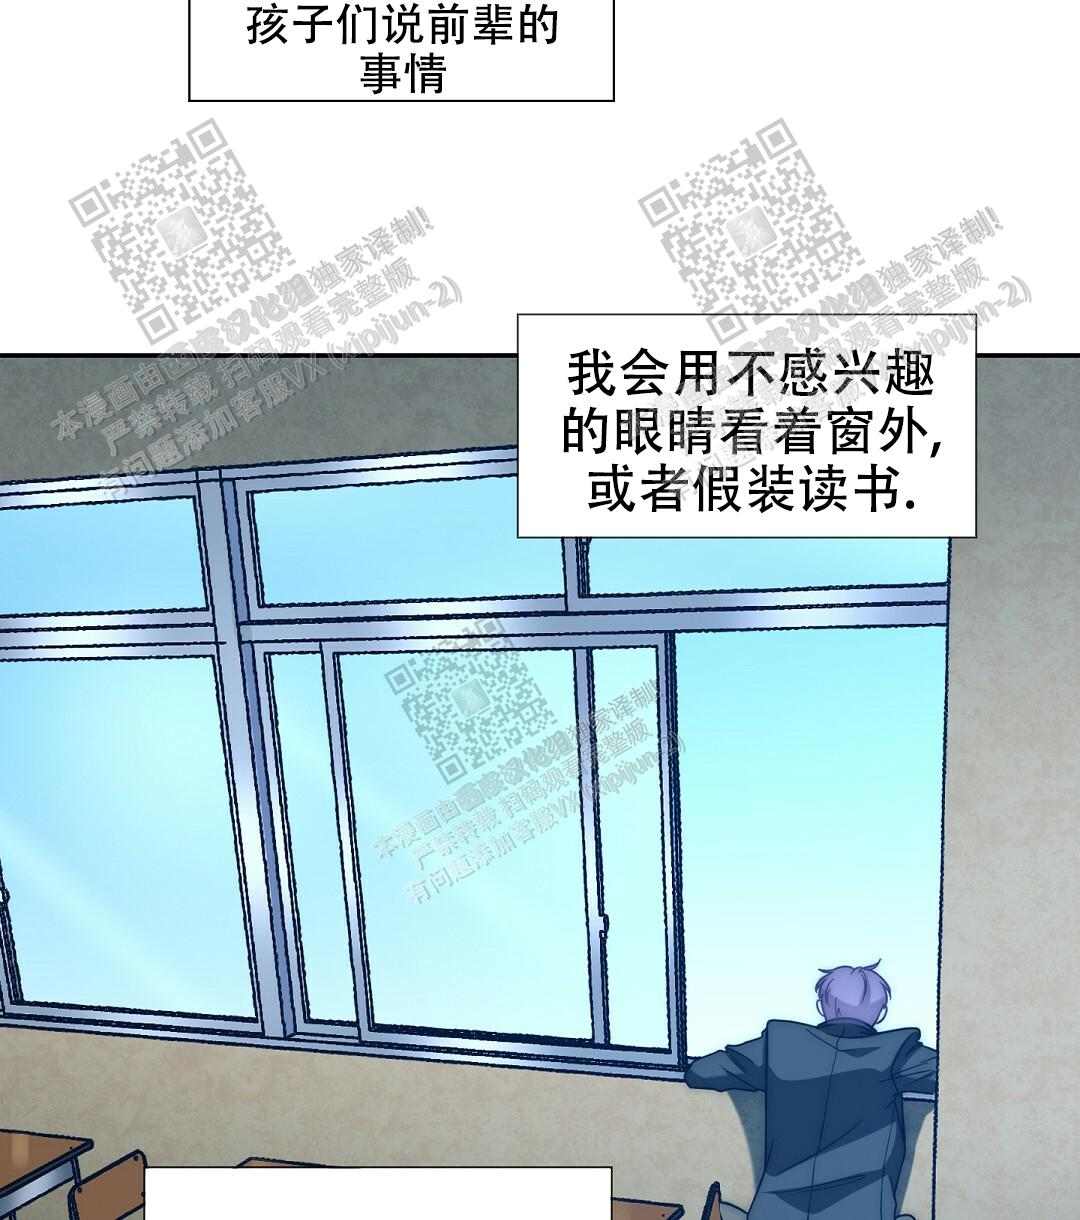 啵乐官网免费漫画39